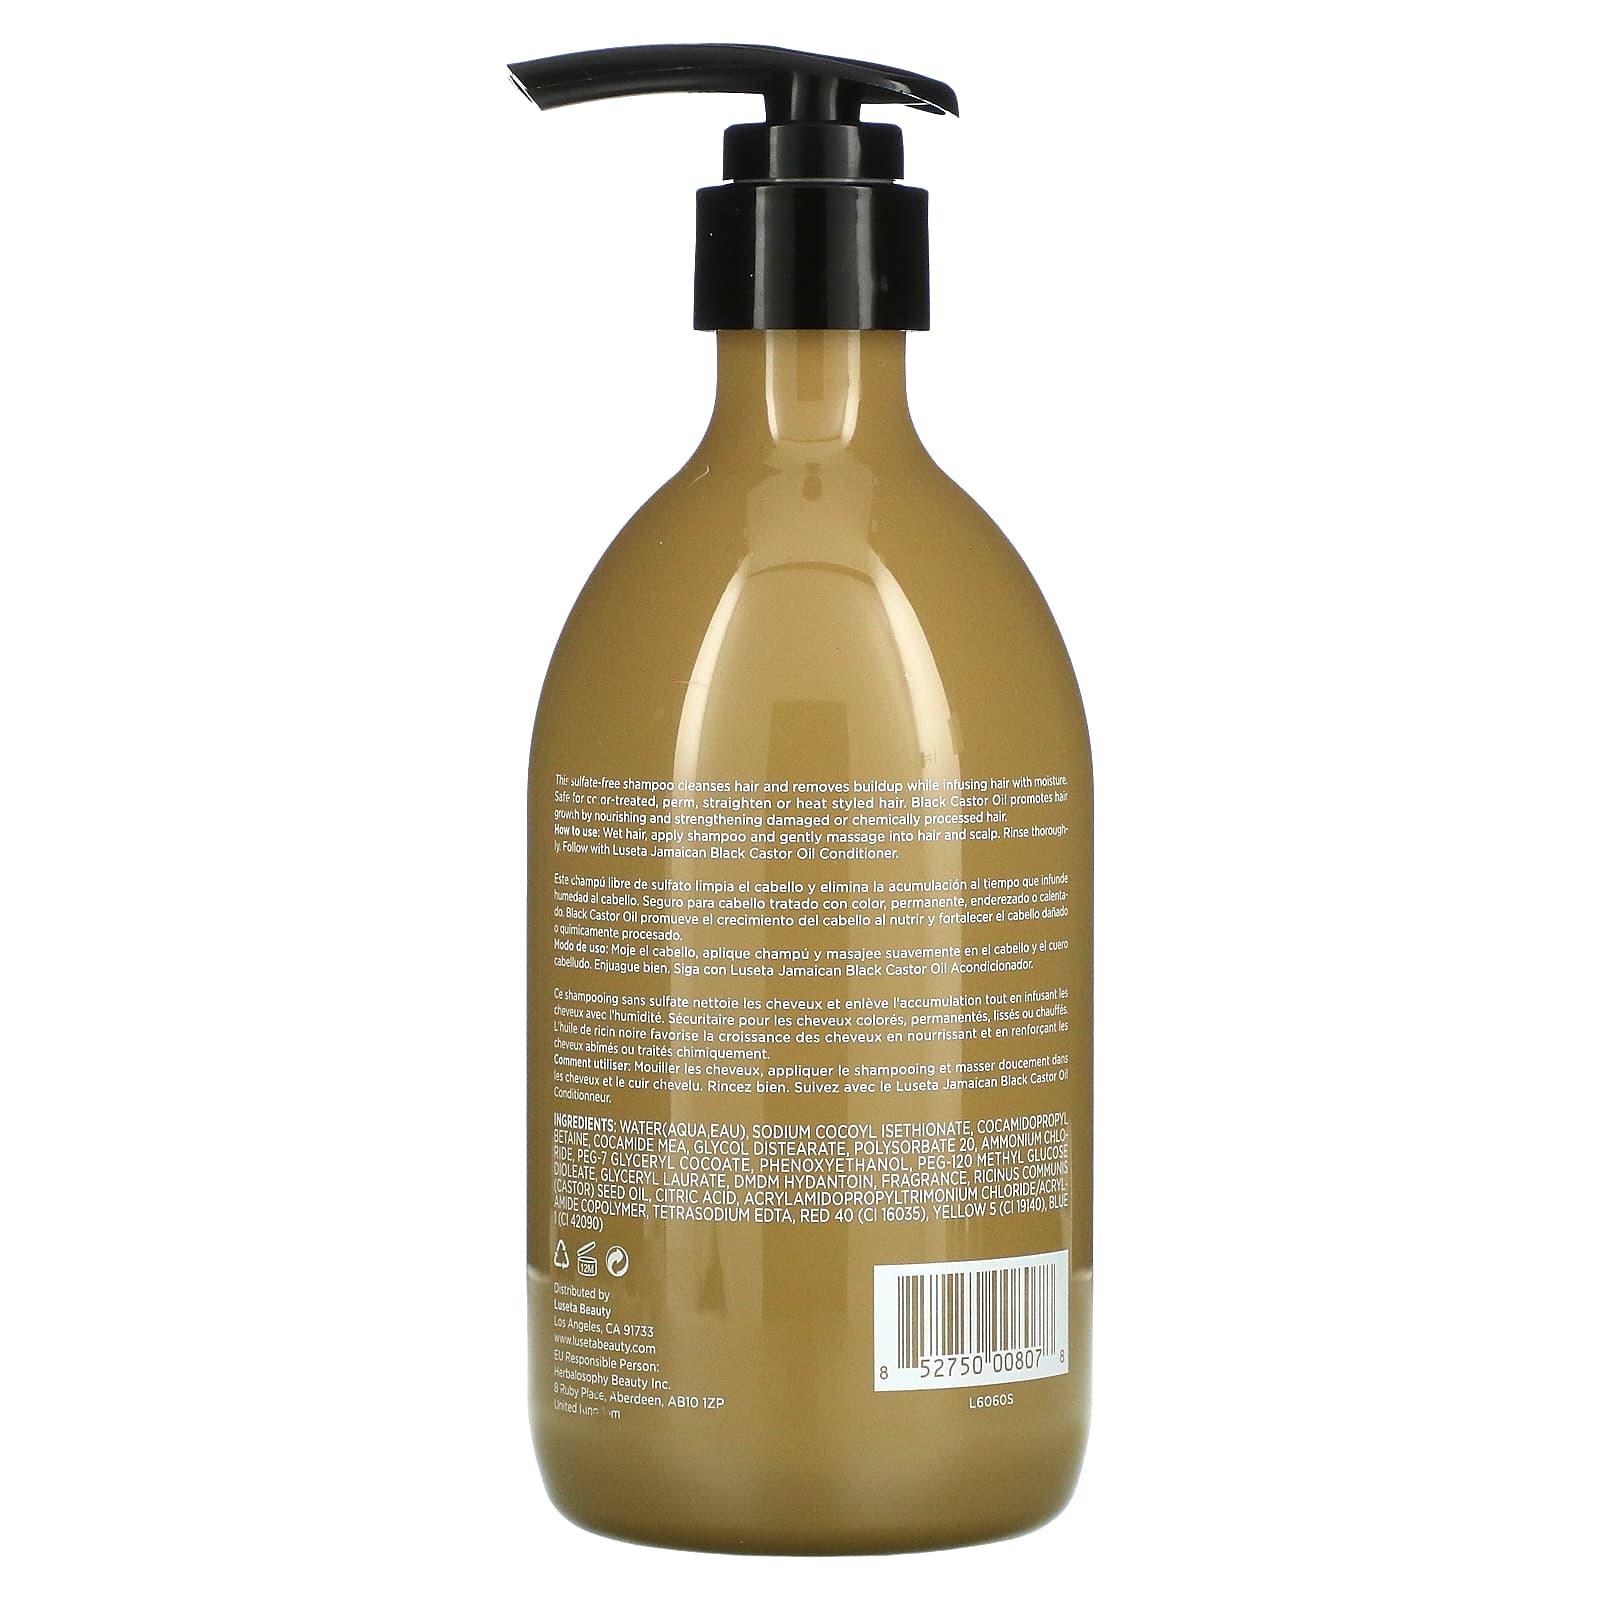 Luseta Beauty, Jamaican Black Castor Oil Shampoo, For Thin & Dry Hair,   fl oz (500 ml)